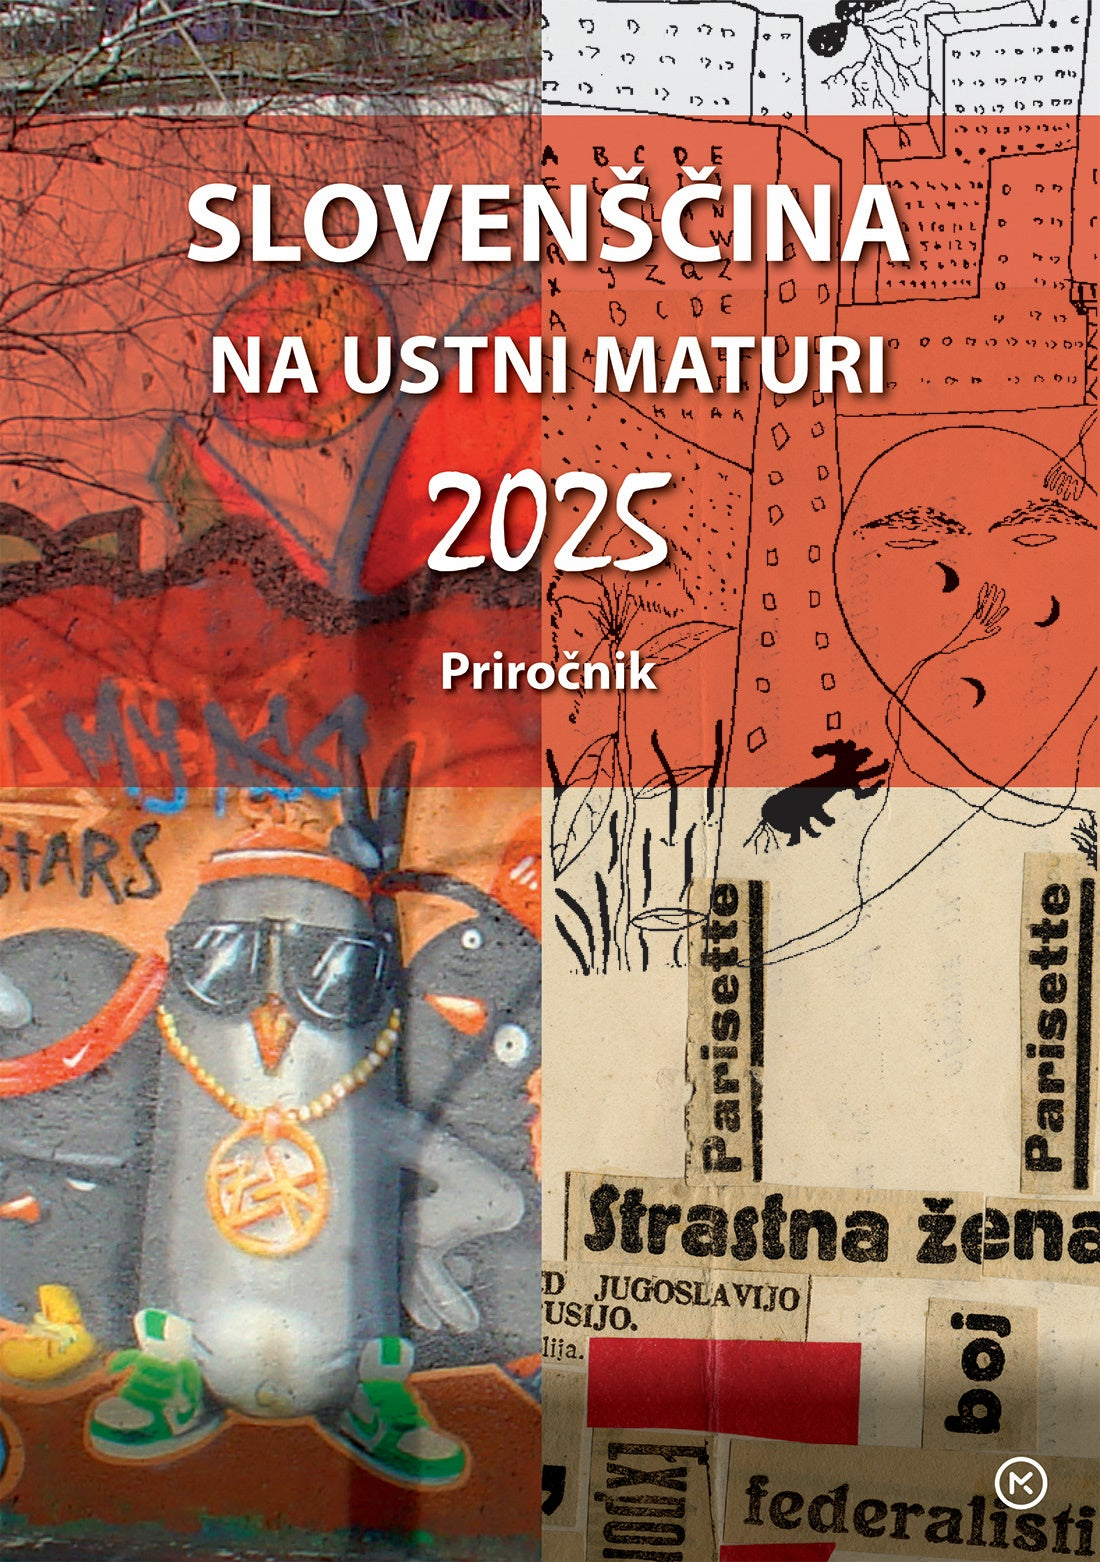 Slovenščina na ustni maturi 2025